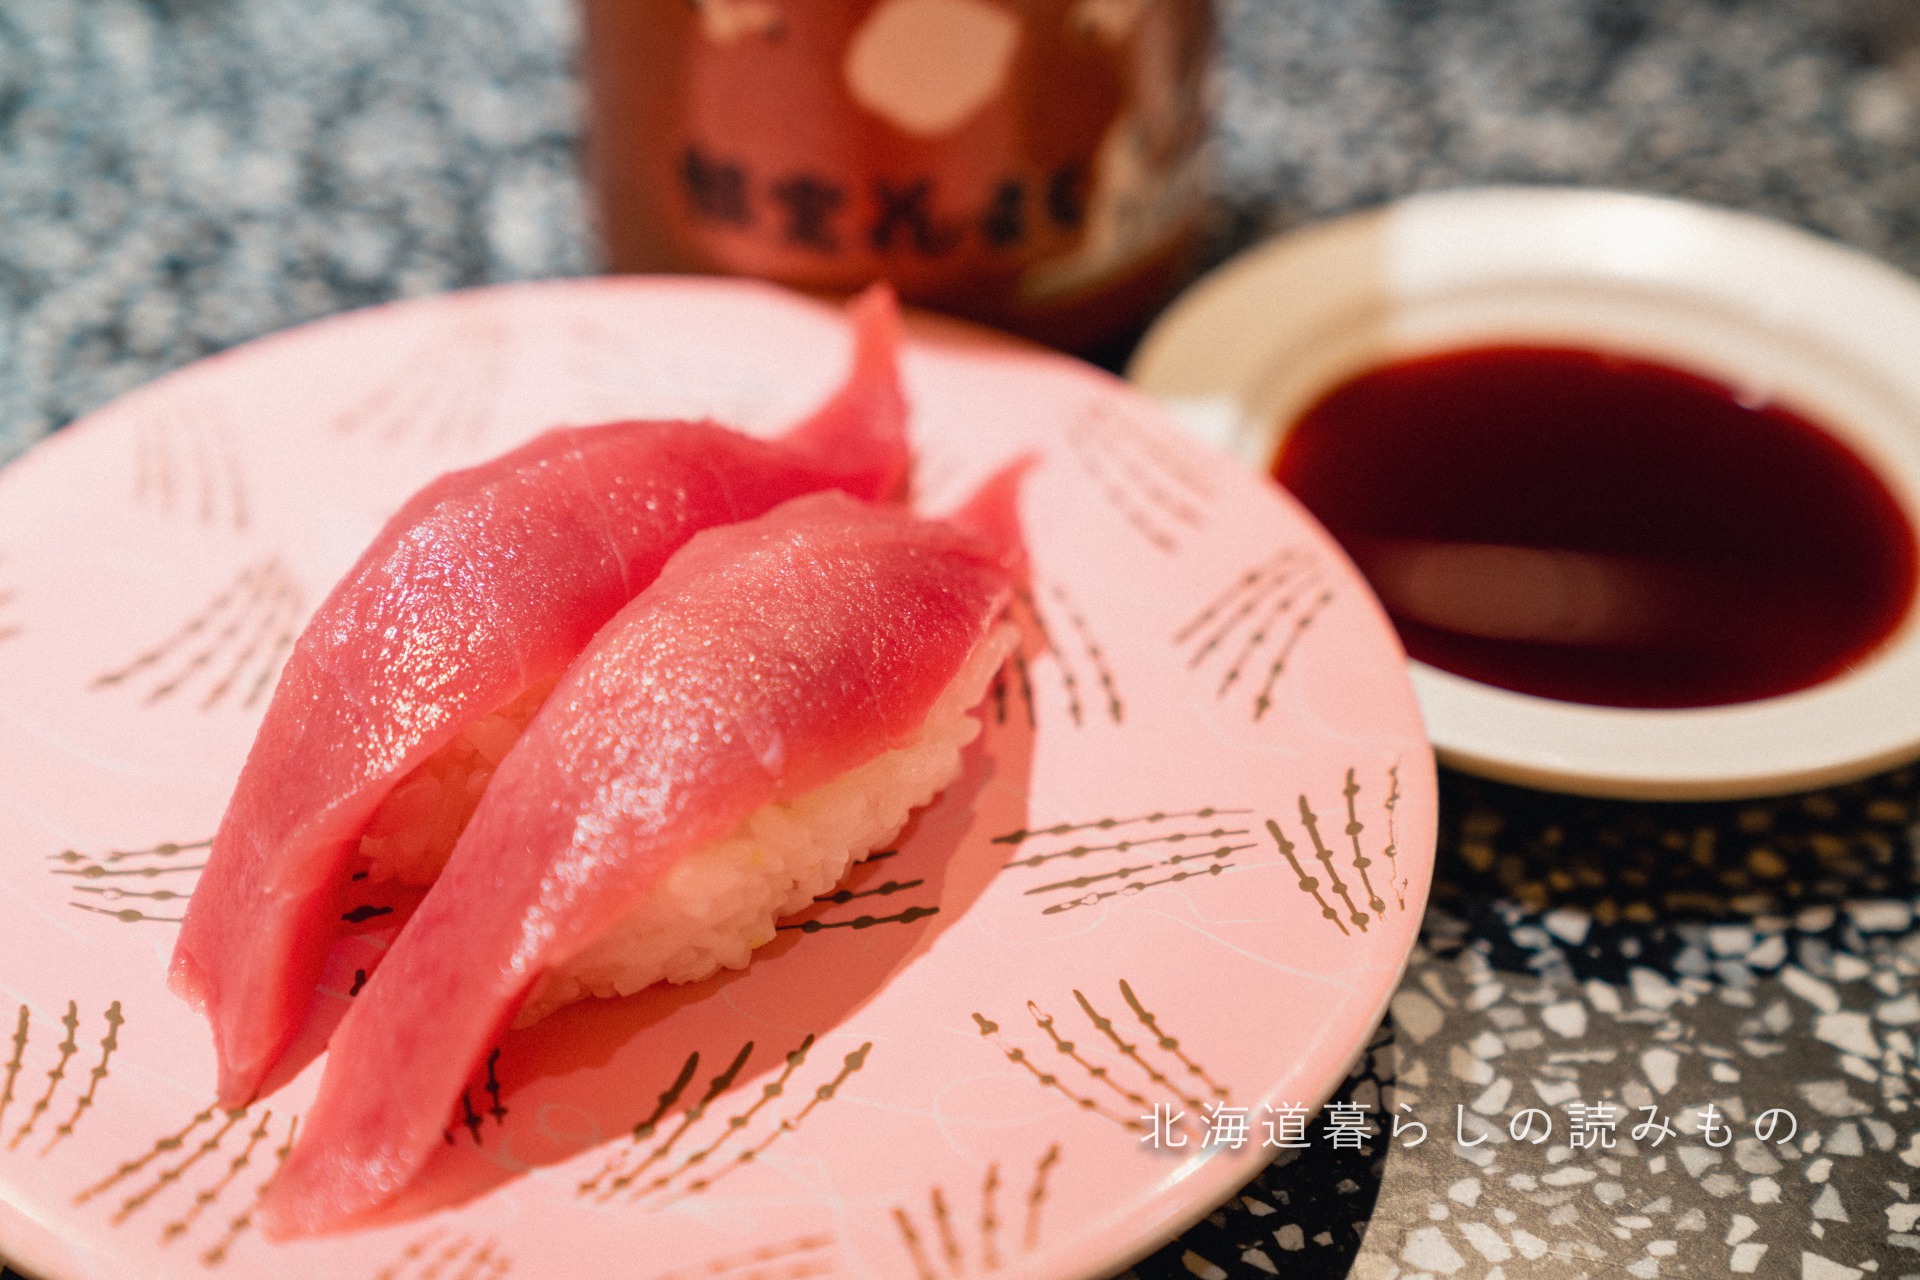 迴轉壽司根室花丸的菜單上的「Bigeye Tuna」